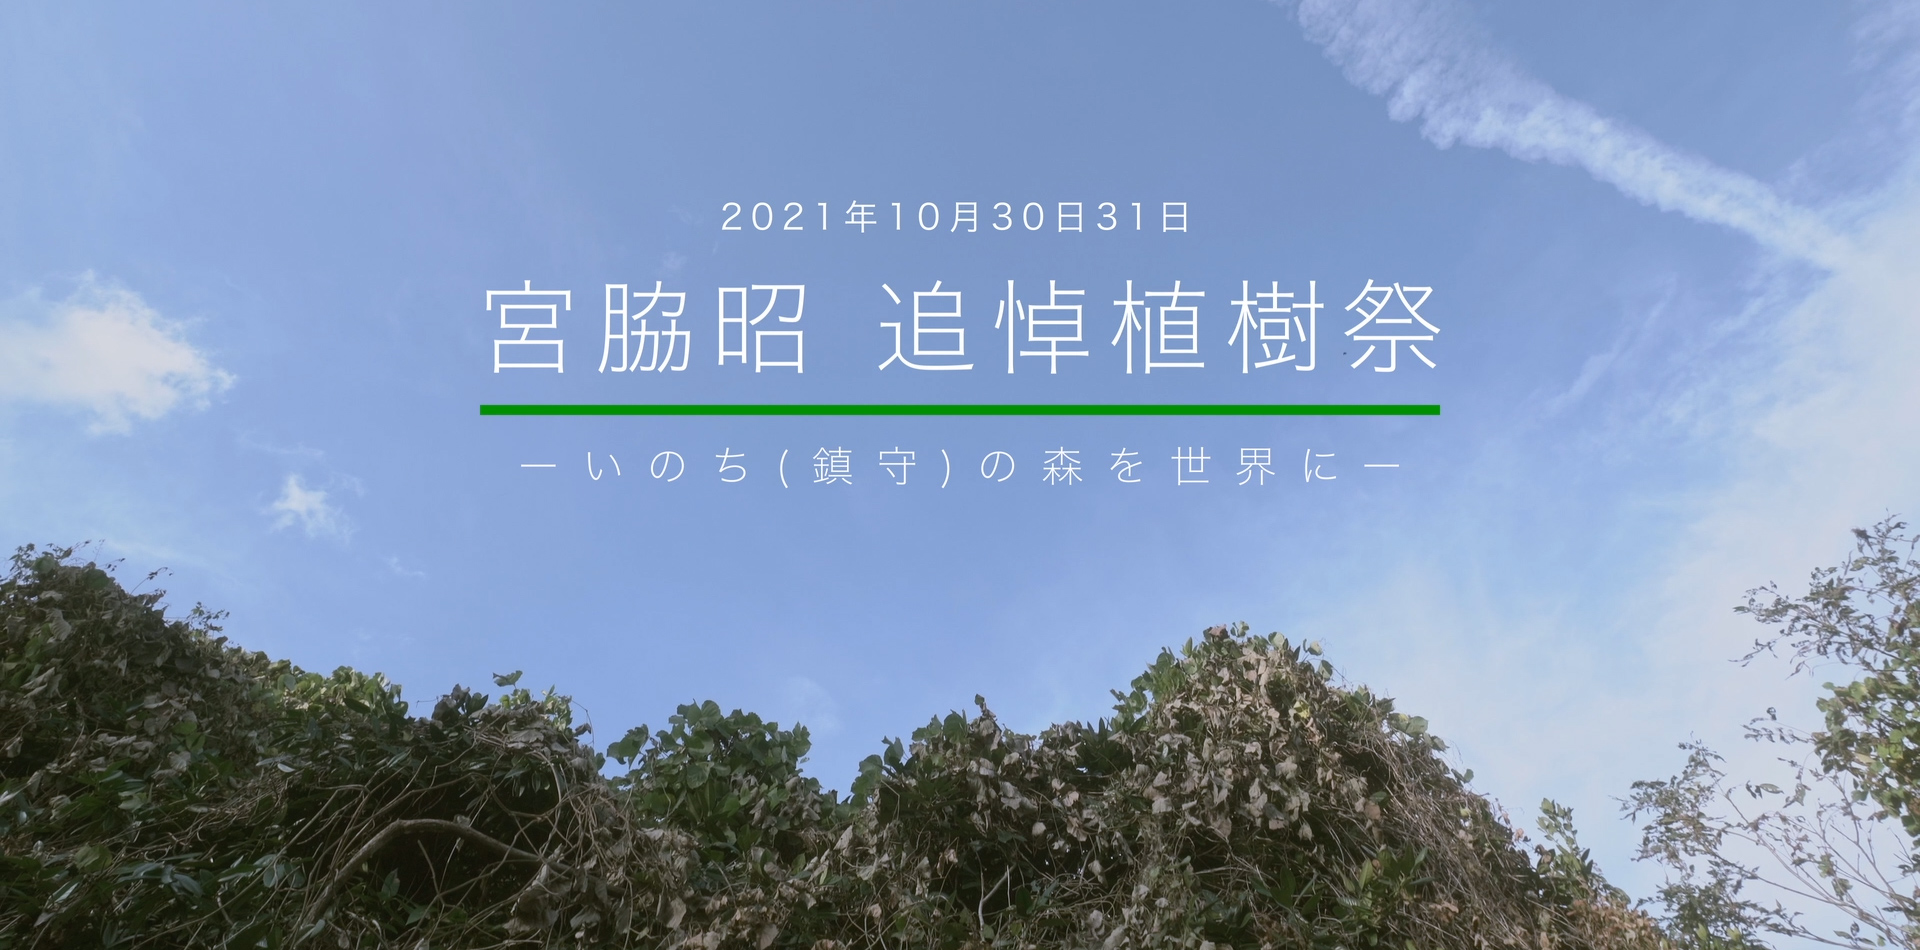 2021年10月宮脇昭追悼植樹祭-動画